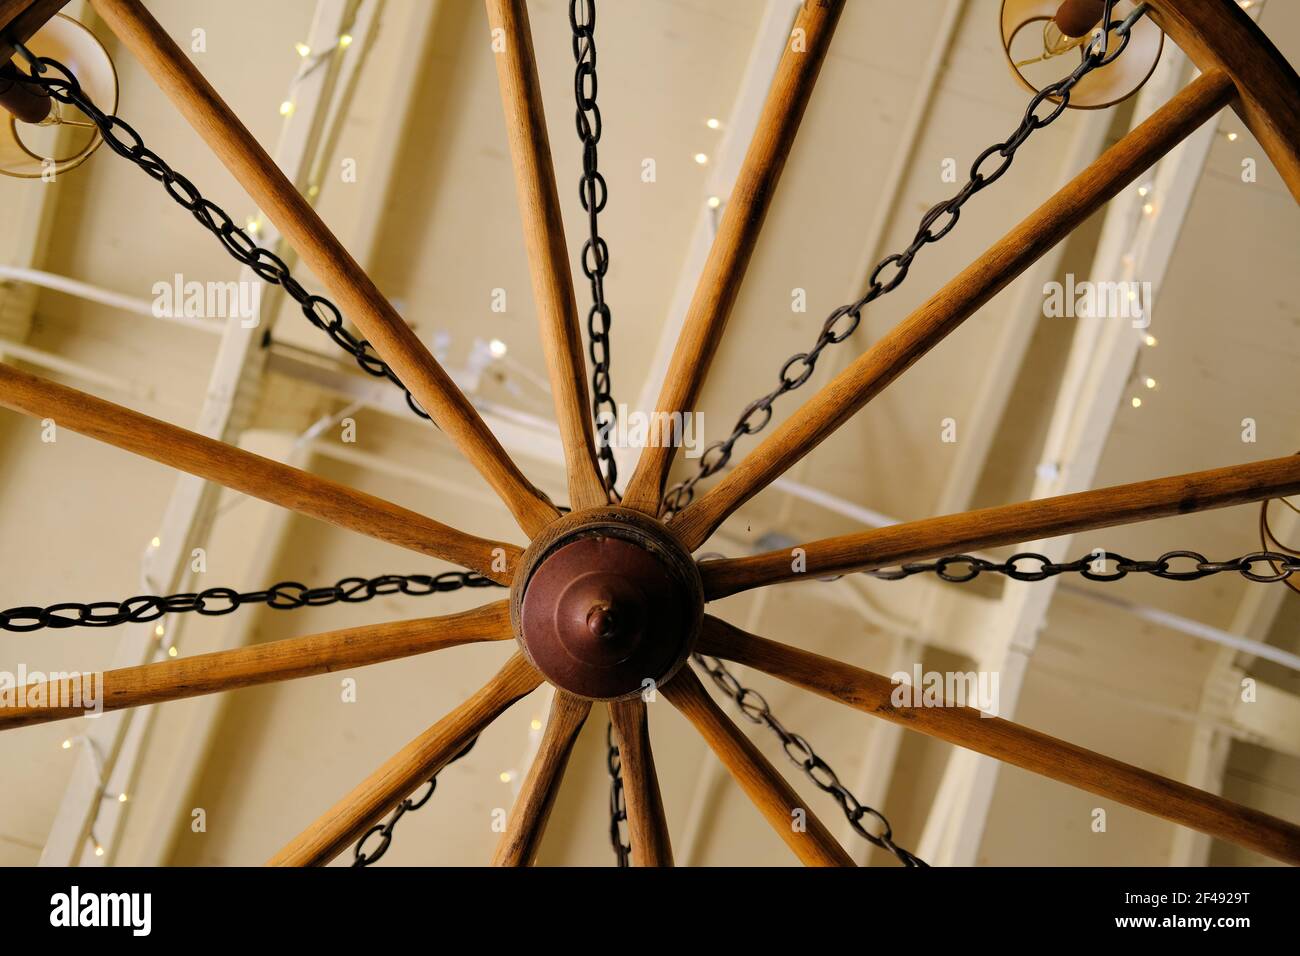 Vue de dessous d'une roue de chariot transformée en un luminaire lustre;  décoration et design rustiques intérieurs Photo Stock - Alamy